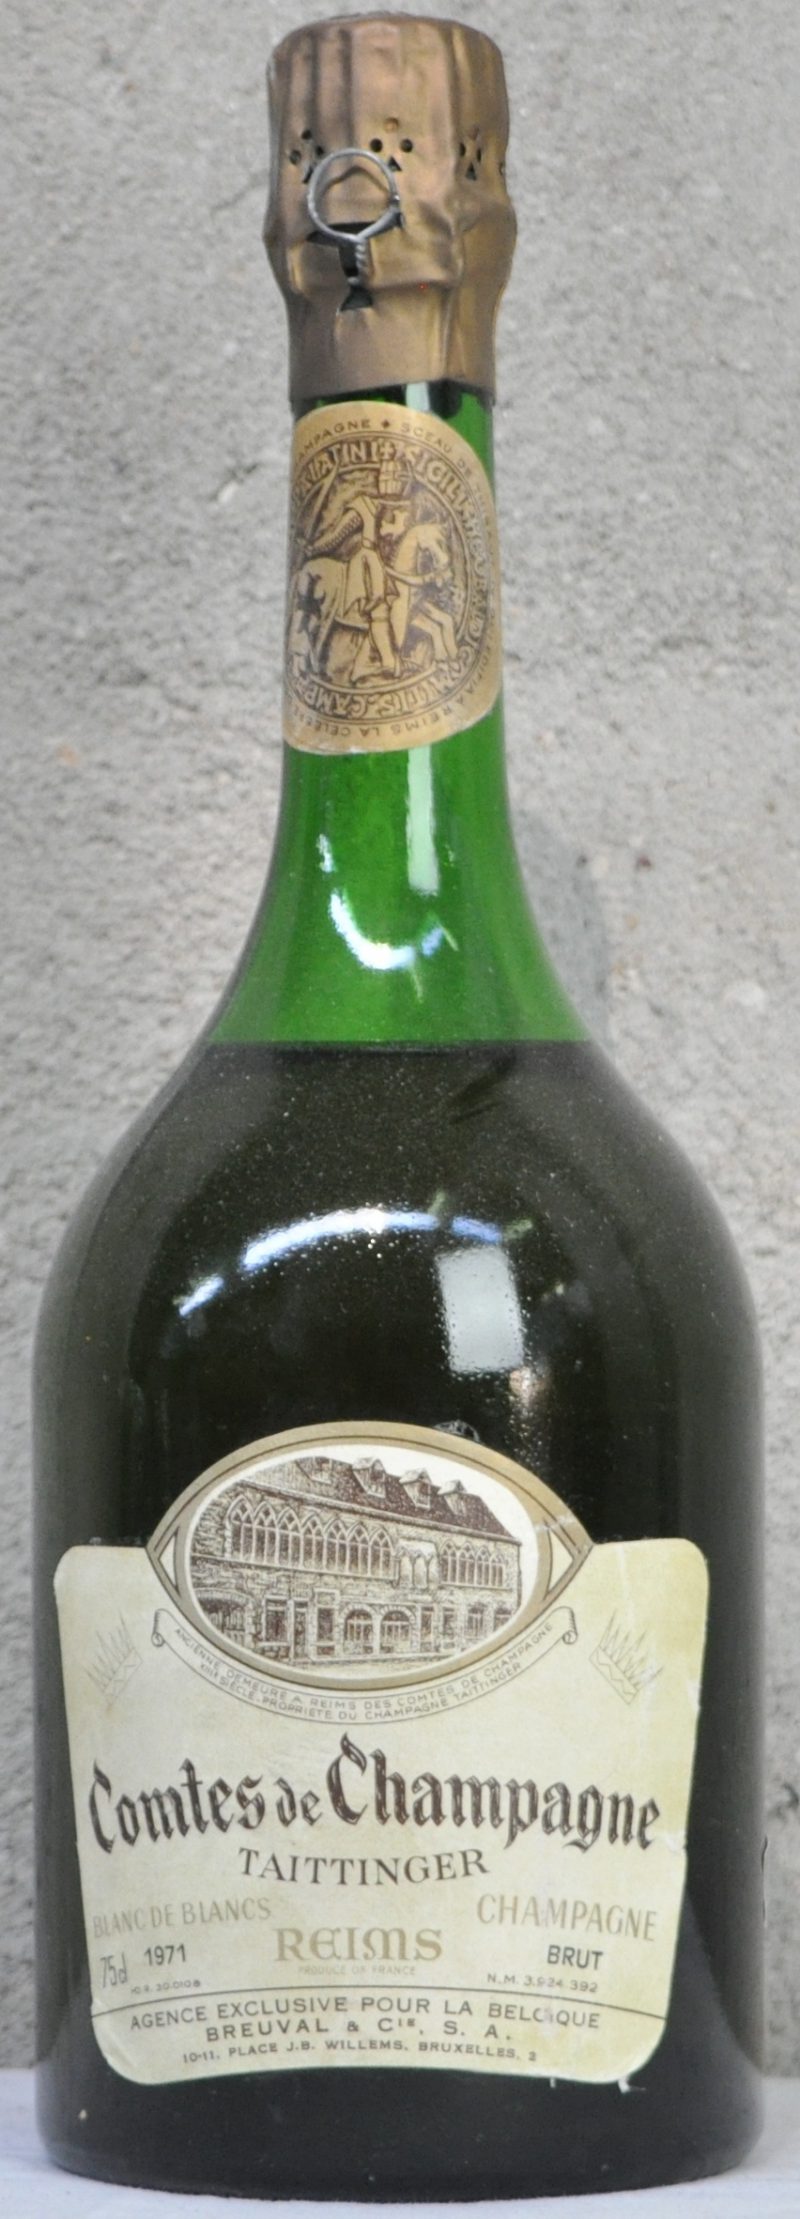 Champagne Brut Comtes de Champagne Blanc de Blancs  Taittinger, Reims M.O.  1971  aantal: 1 bt ts